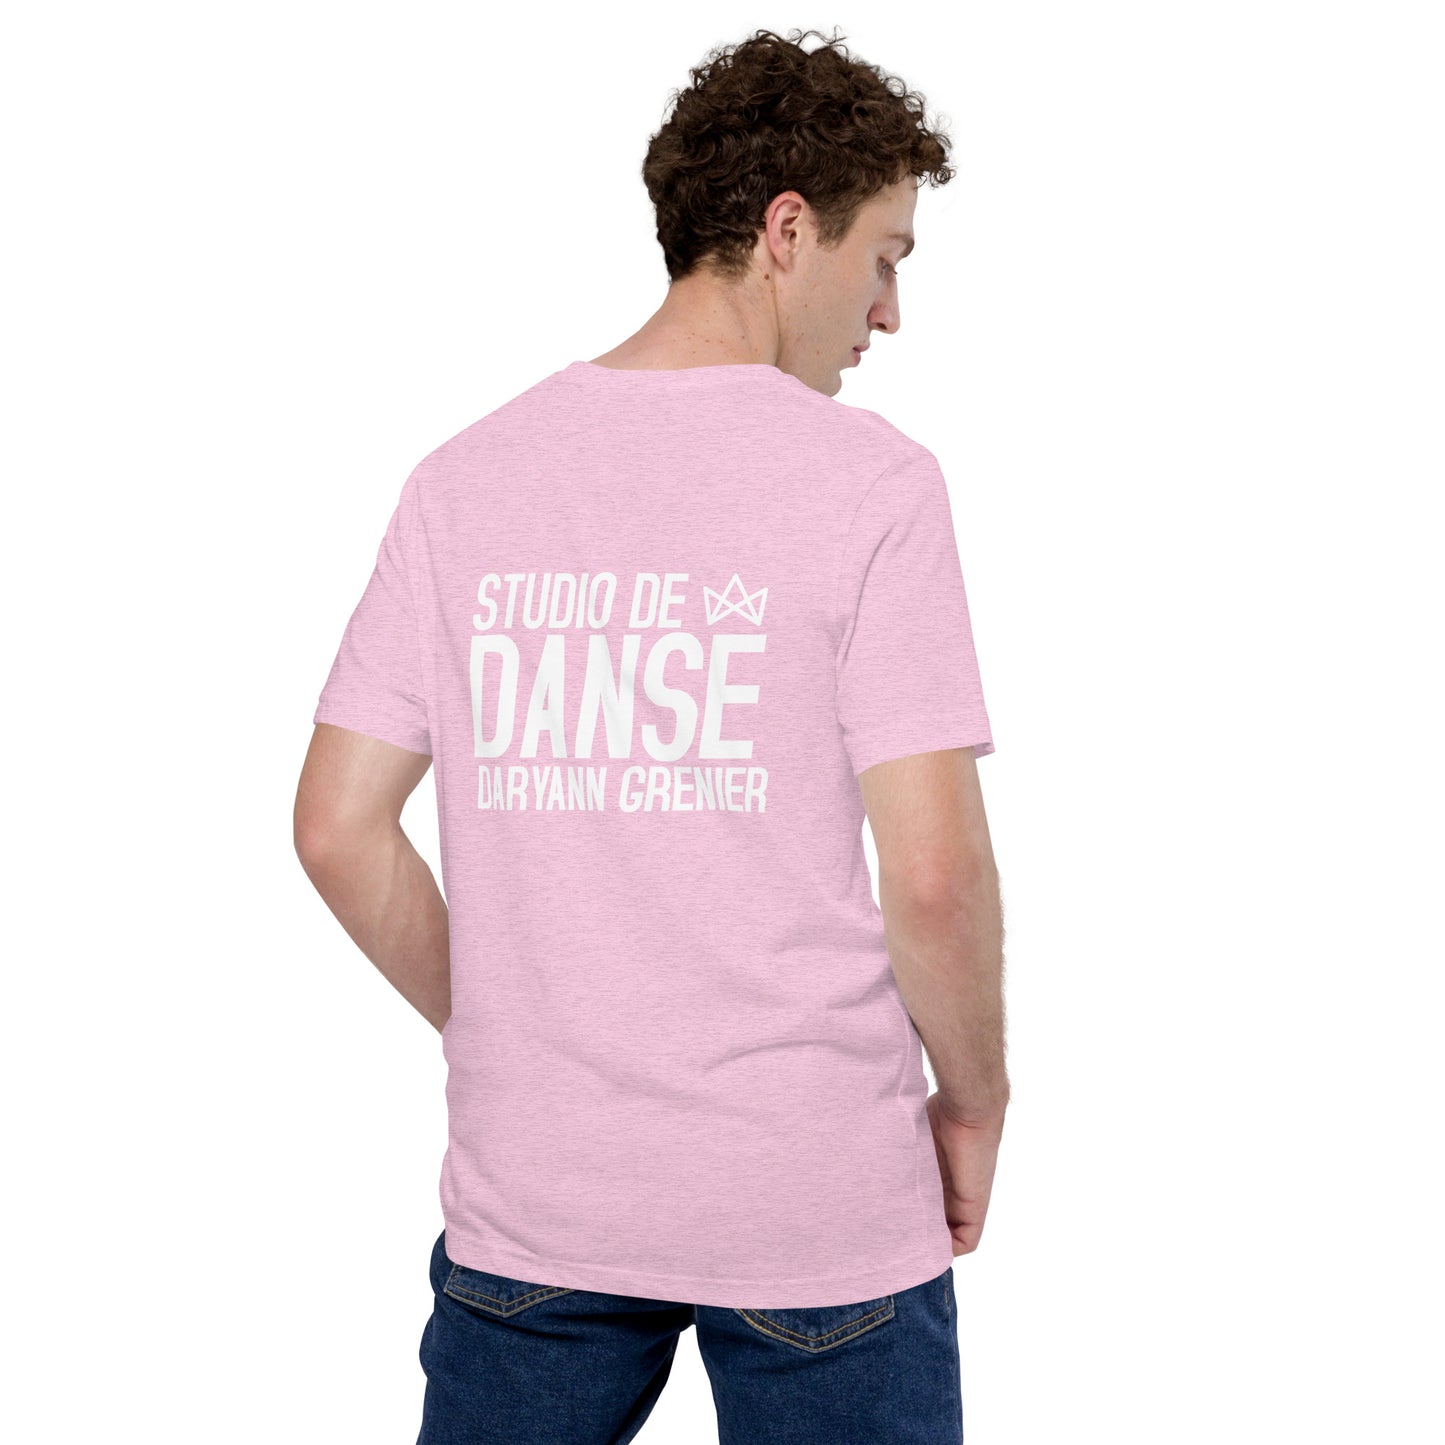 T-shirt unisexe SDDG